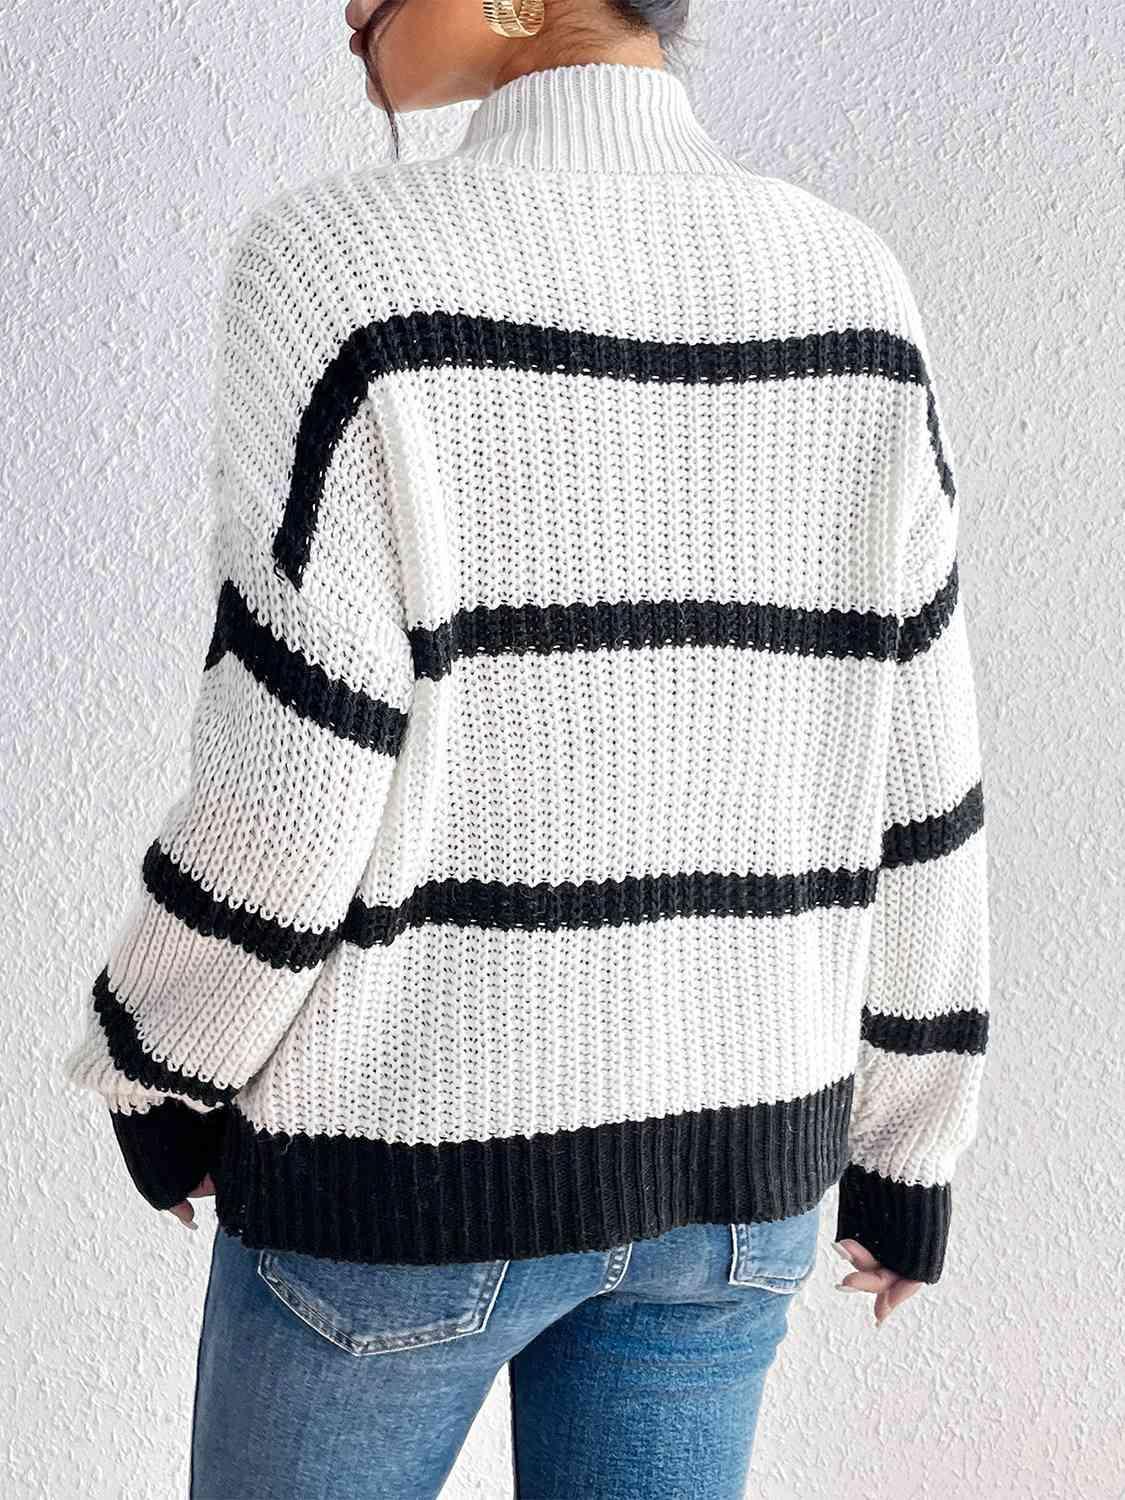 Infinitely Cozy Striped Mock Neck Sweater-MXSTUDIO.COM